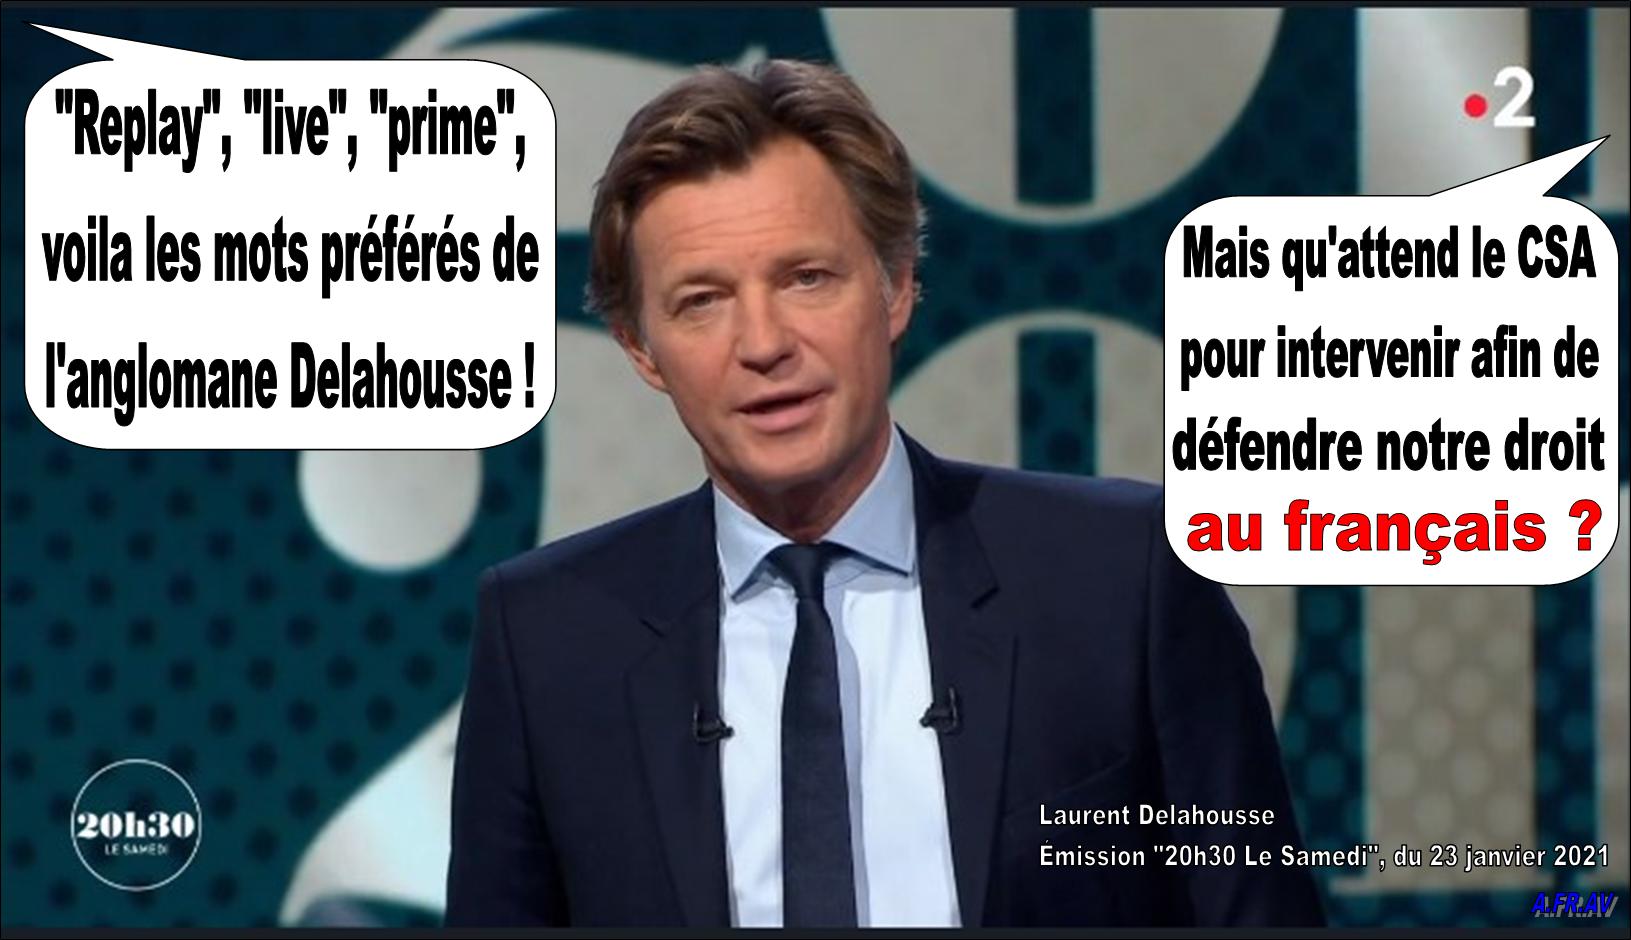 Laurent Delahousse, 20h30 le samedi, France 2, France Télévisions